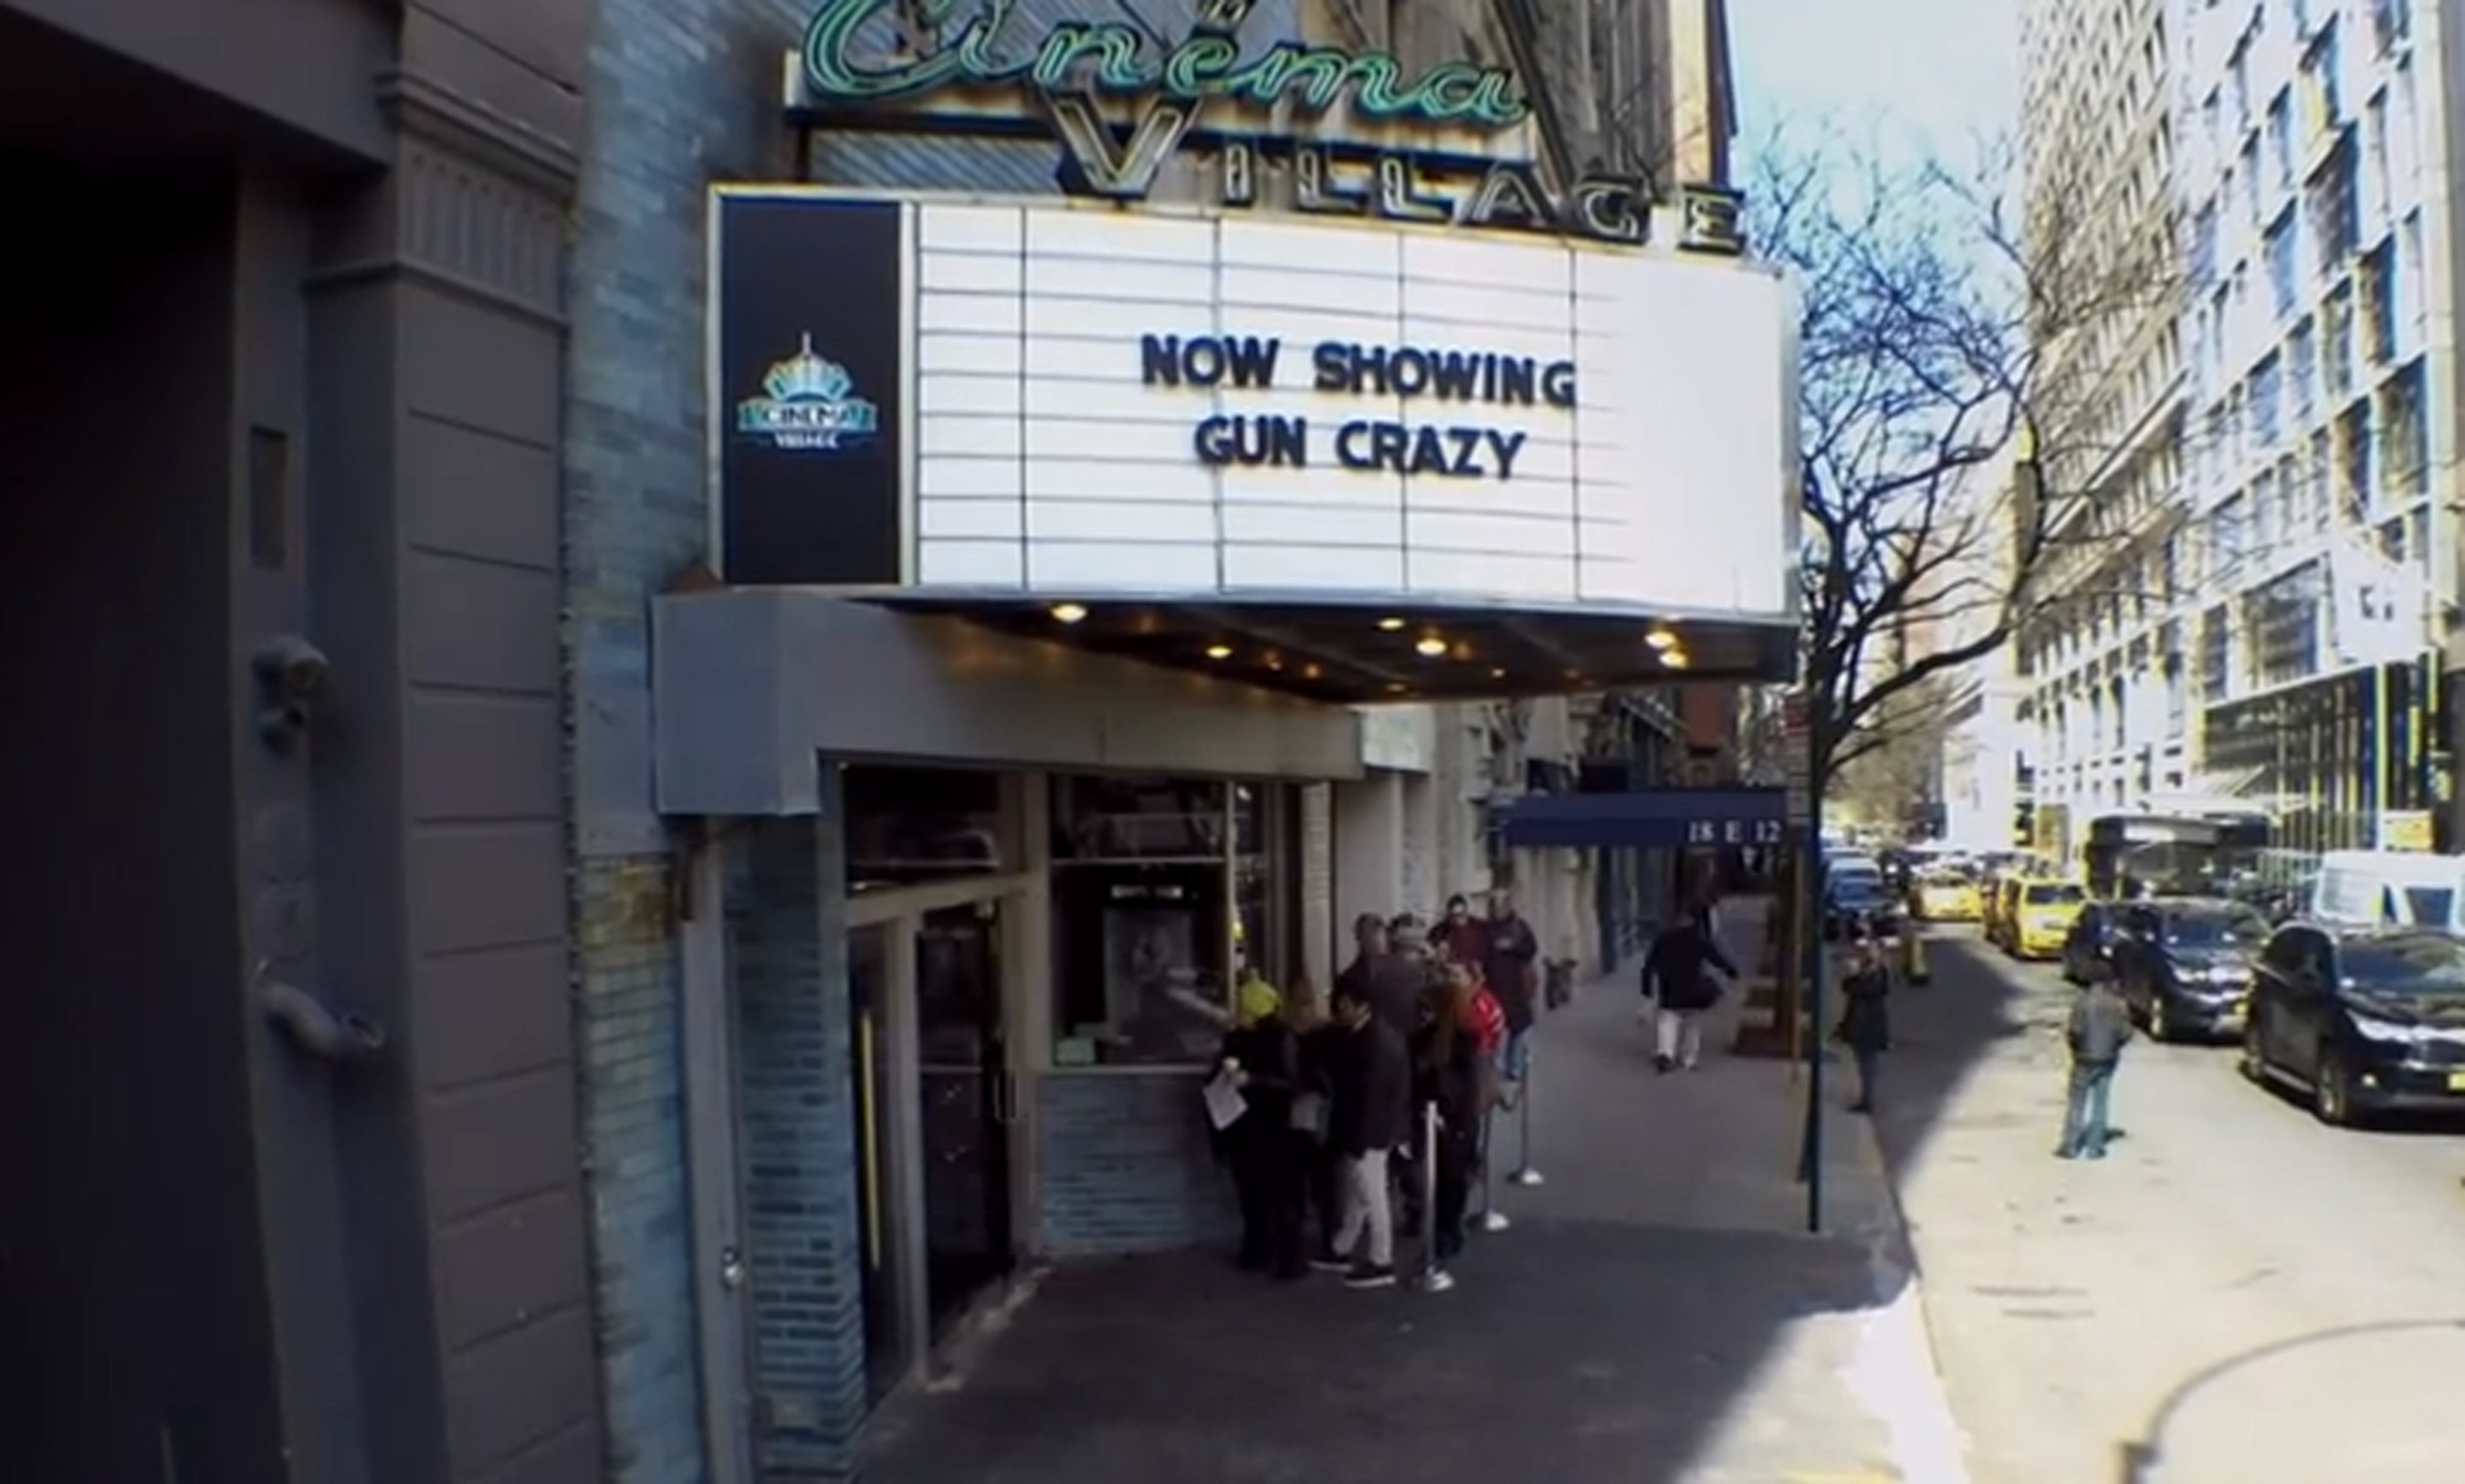 Gun Crazy movie marquee